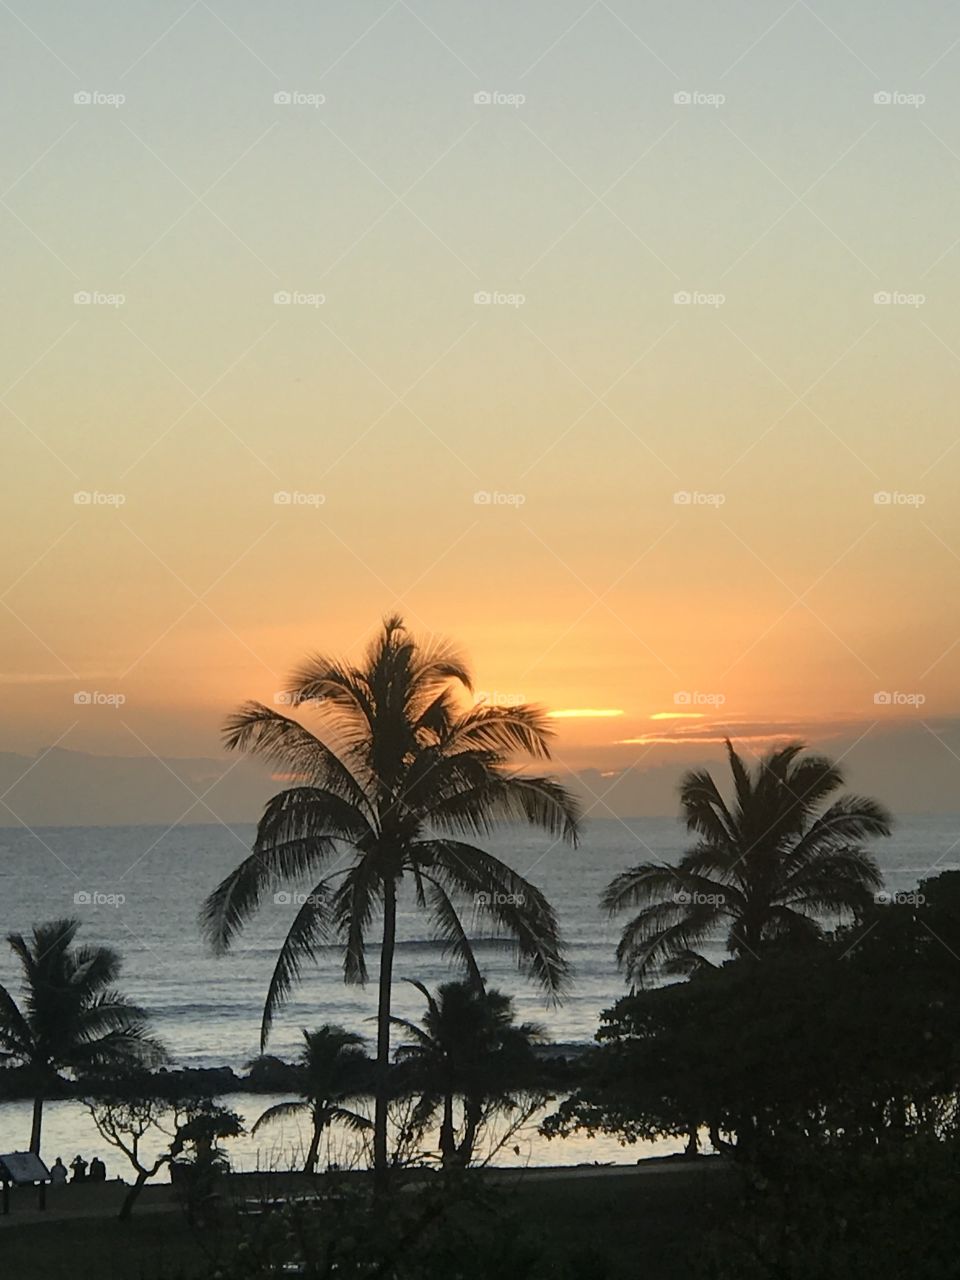 Coastal Sunrise